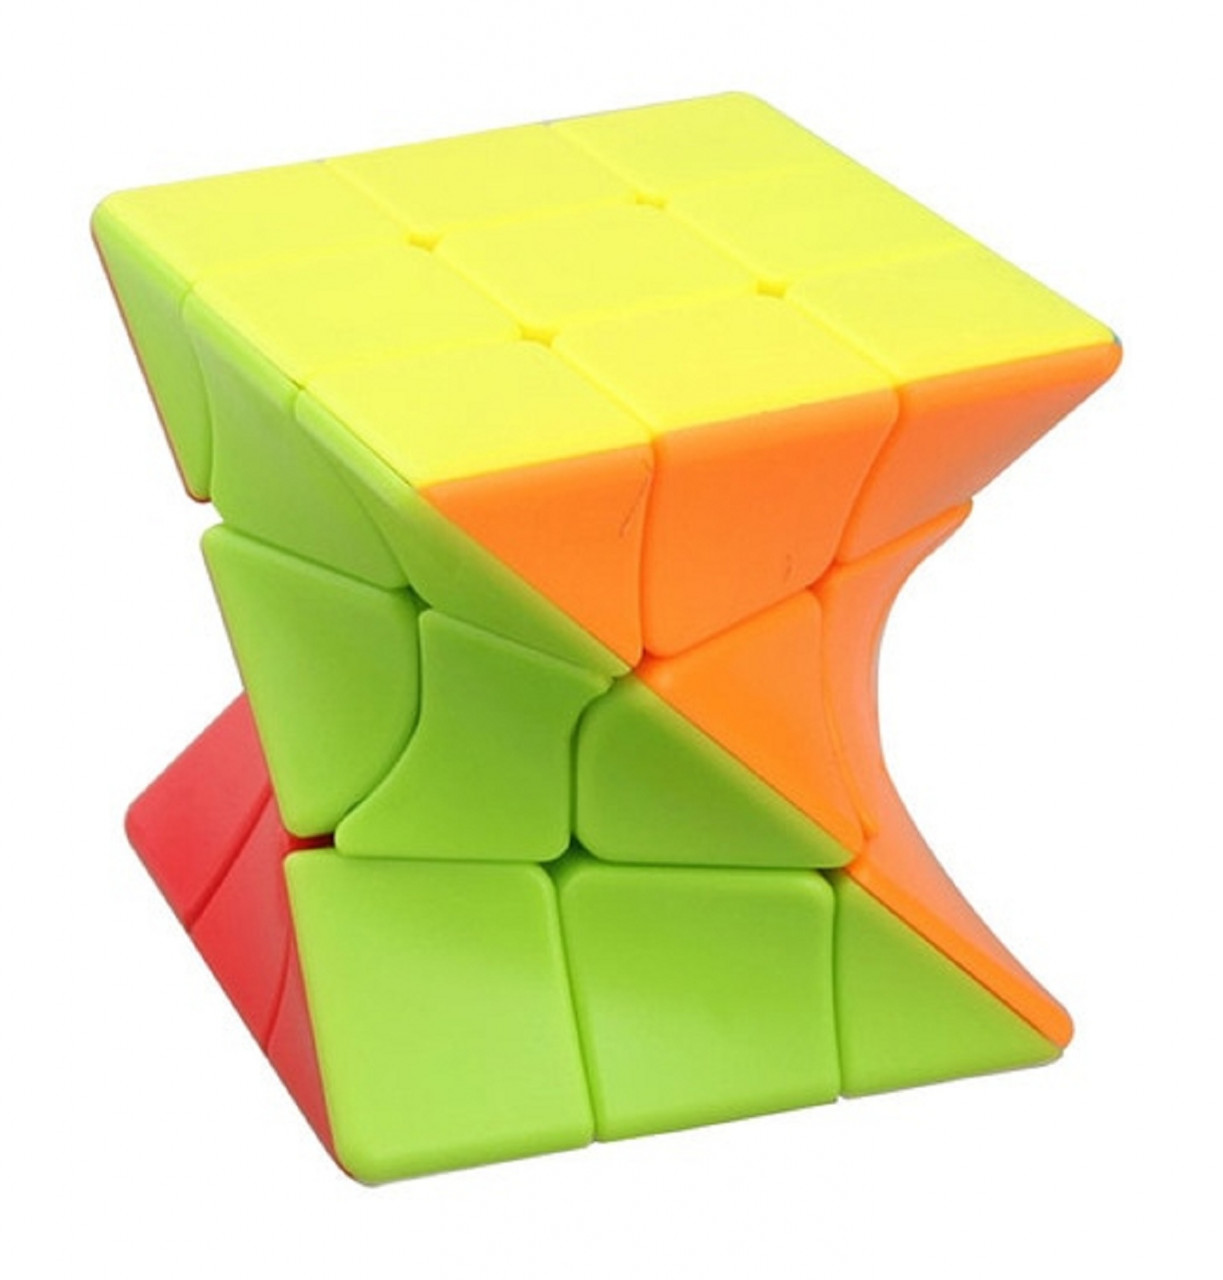 Twisted Rubik